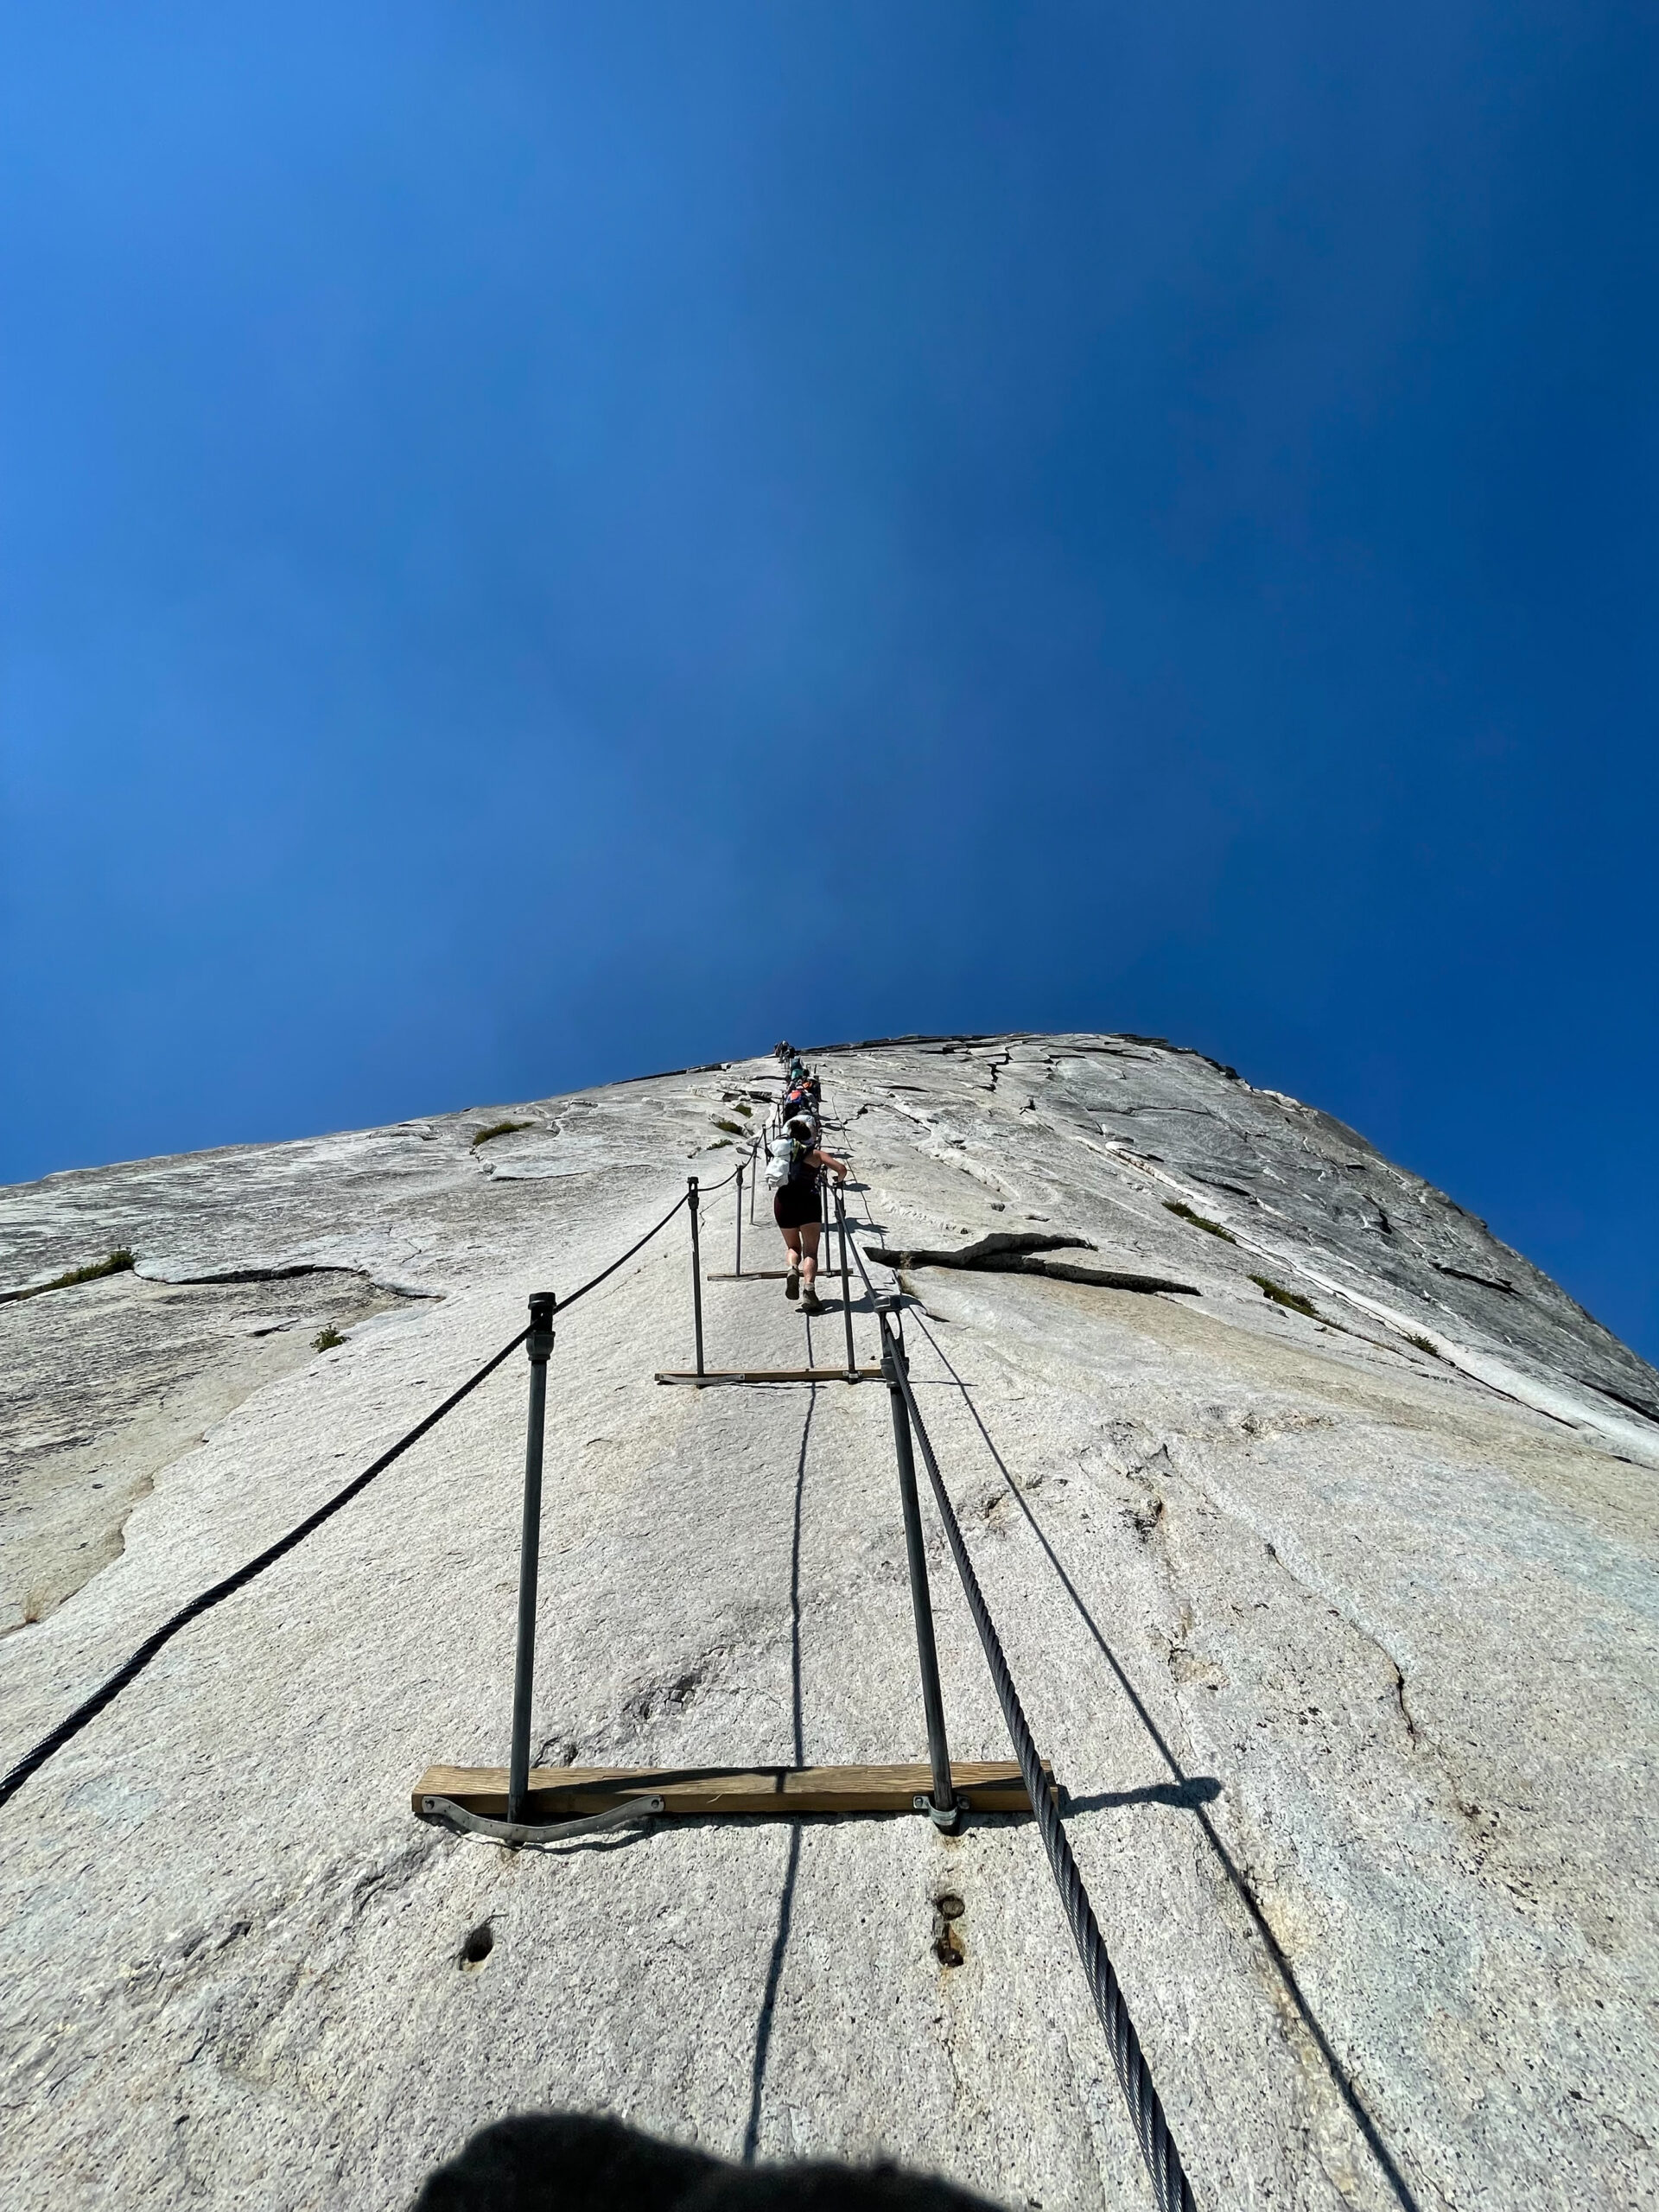 Ascending the Half Dome cables in Yosemite